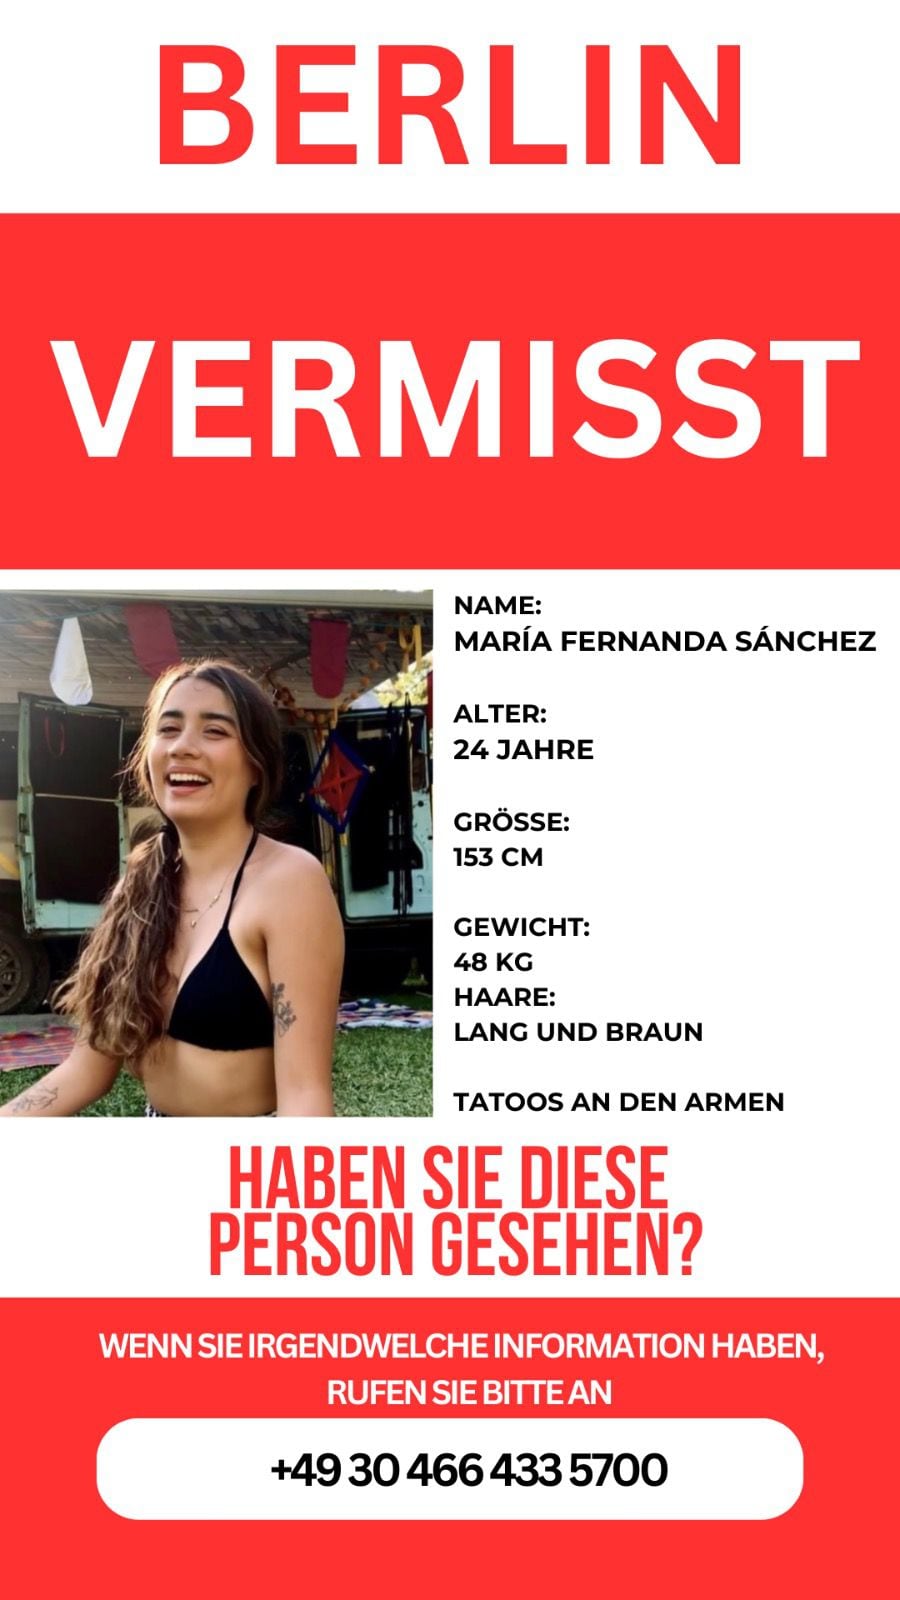 En Berlín, grupos feministas comenzaron a circular el boletín de búsqueda.